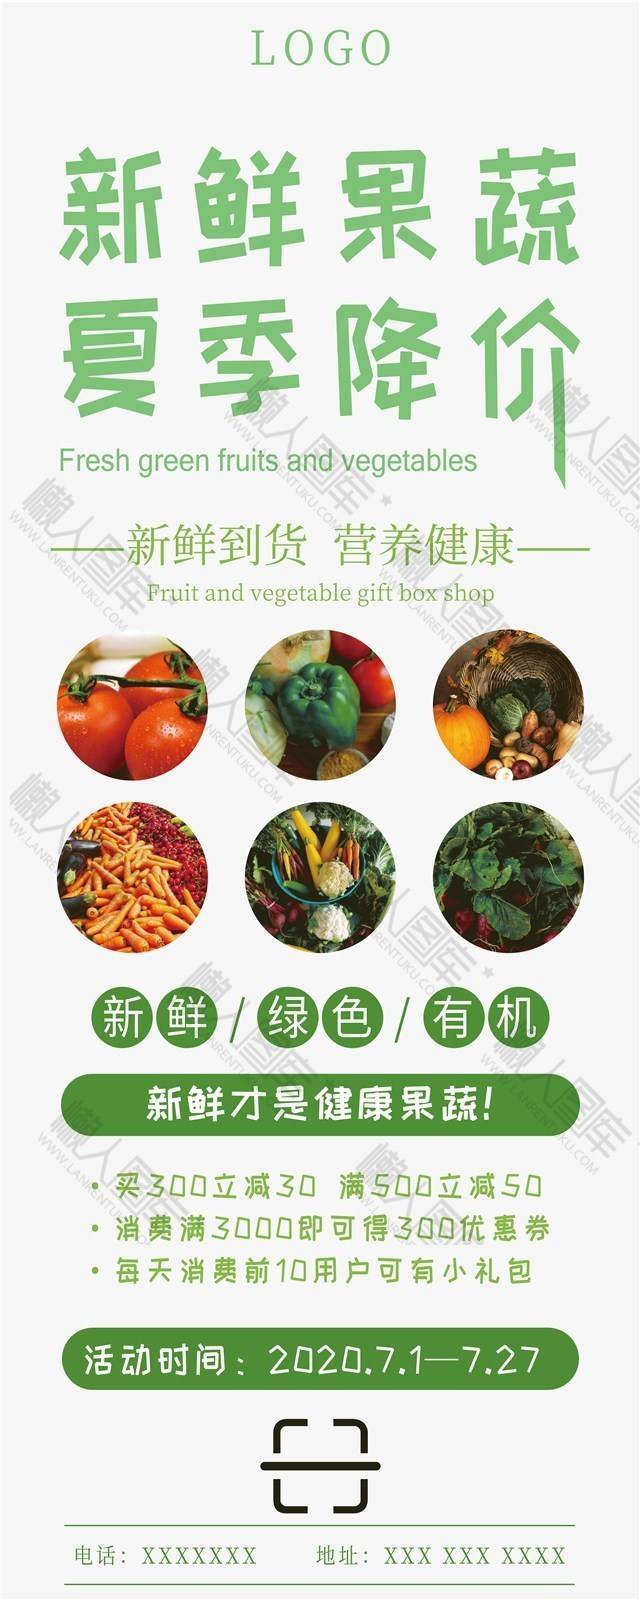 夏天新鲜果蔬广告宣传海报